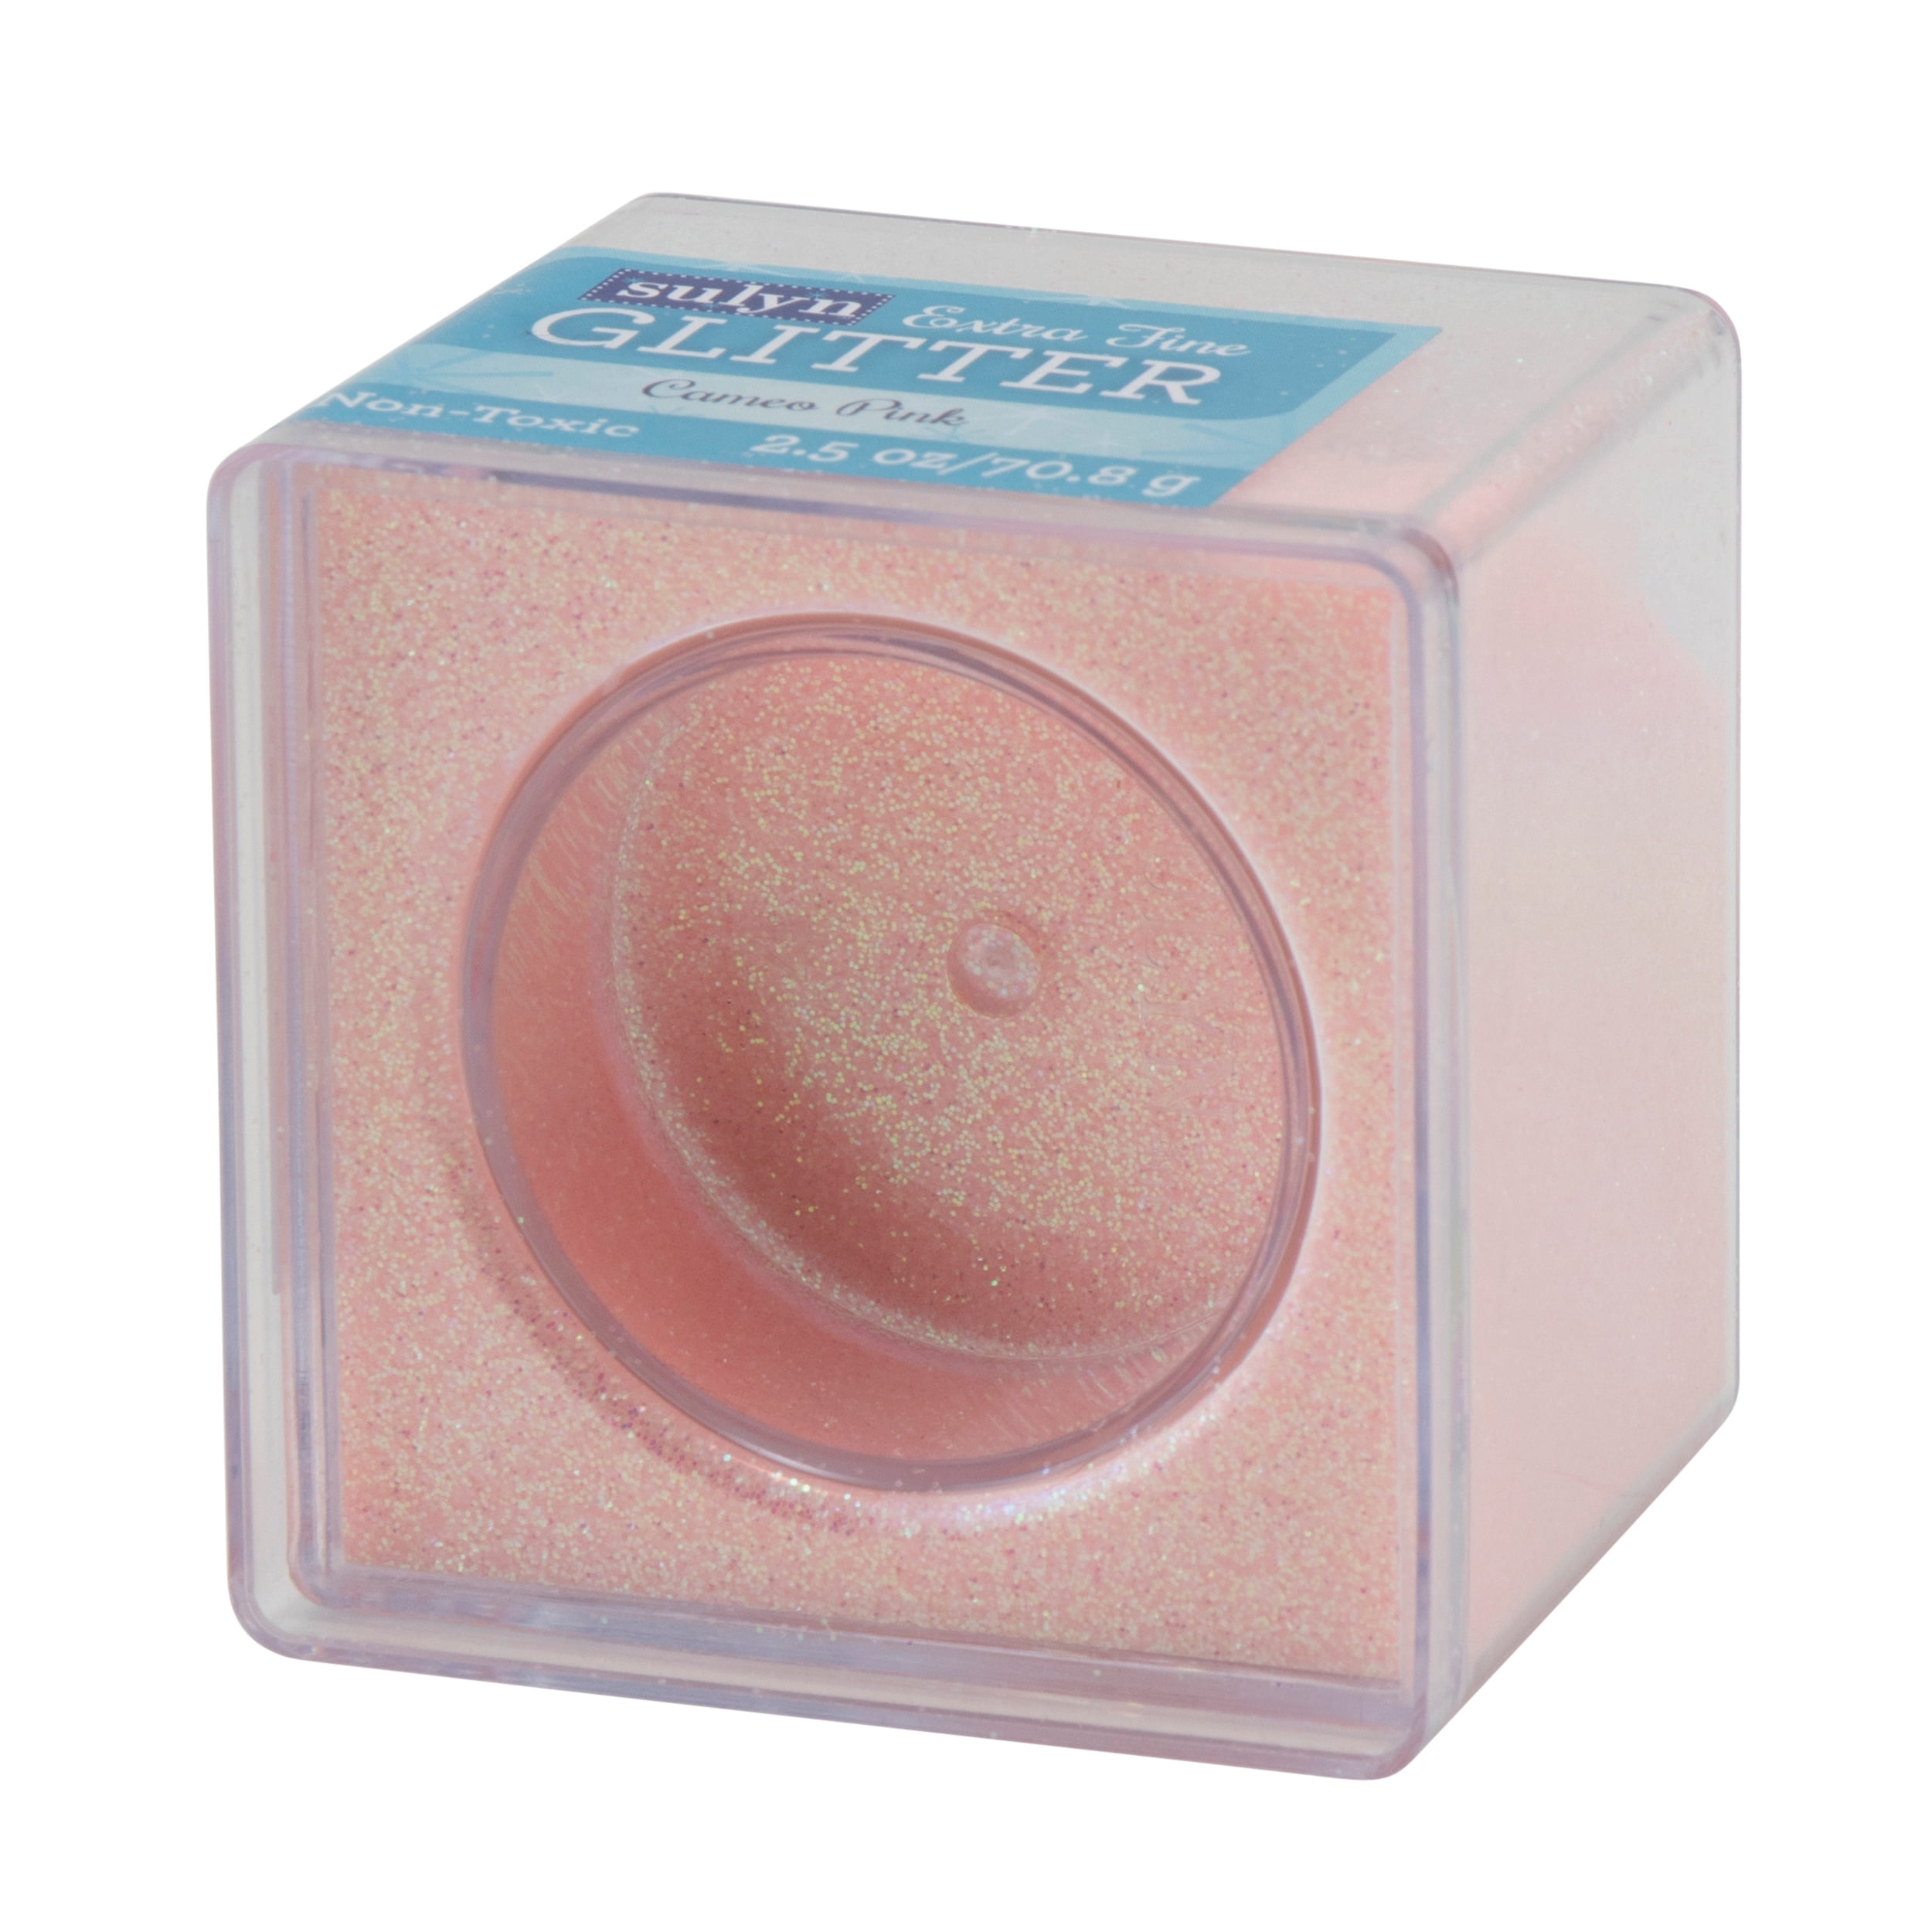 Ultra Fine Glitter Makeup Hot Pink Glitter